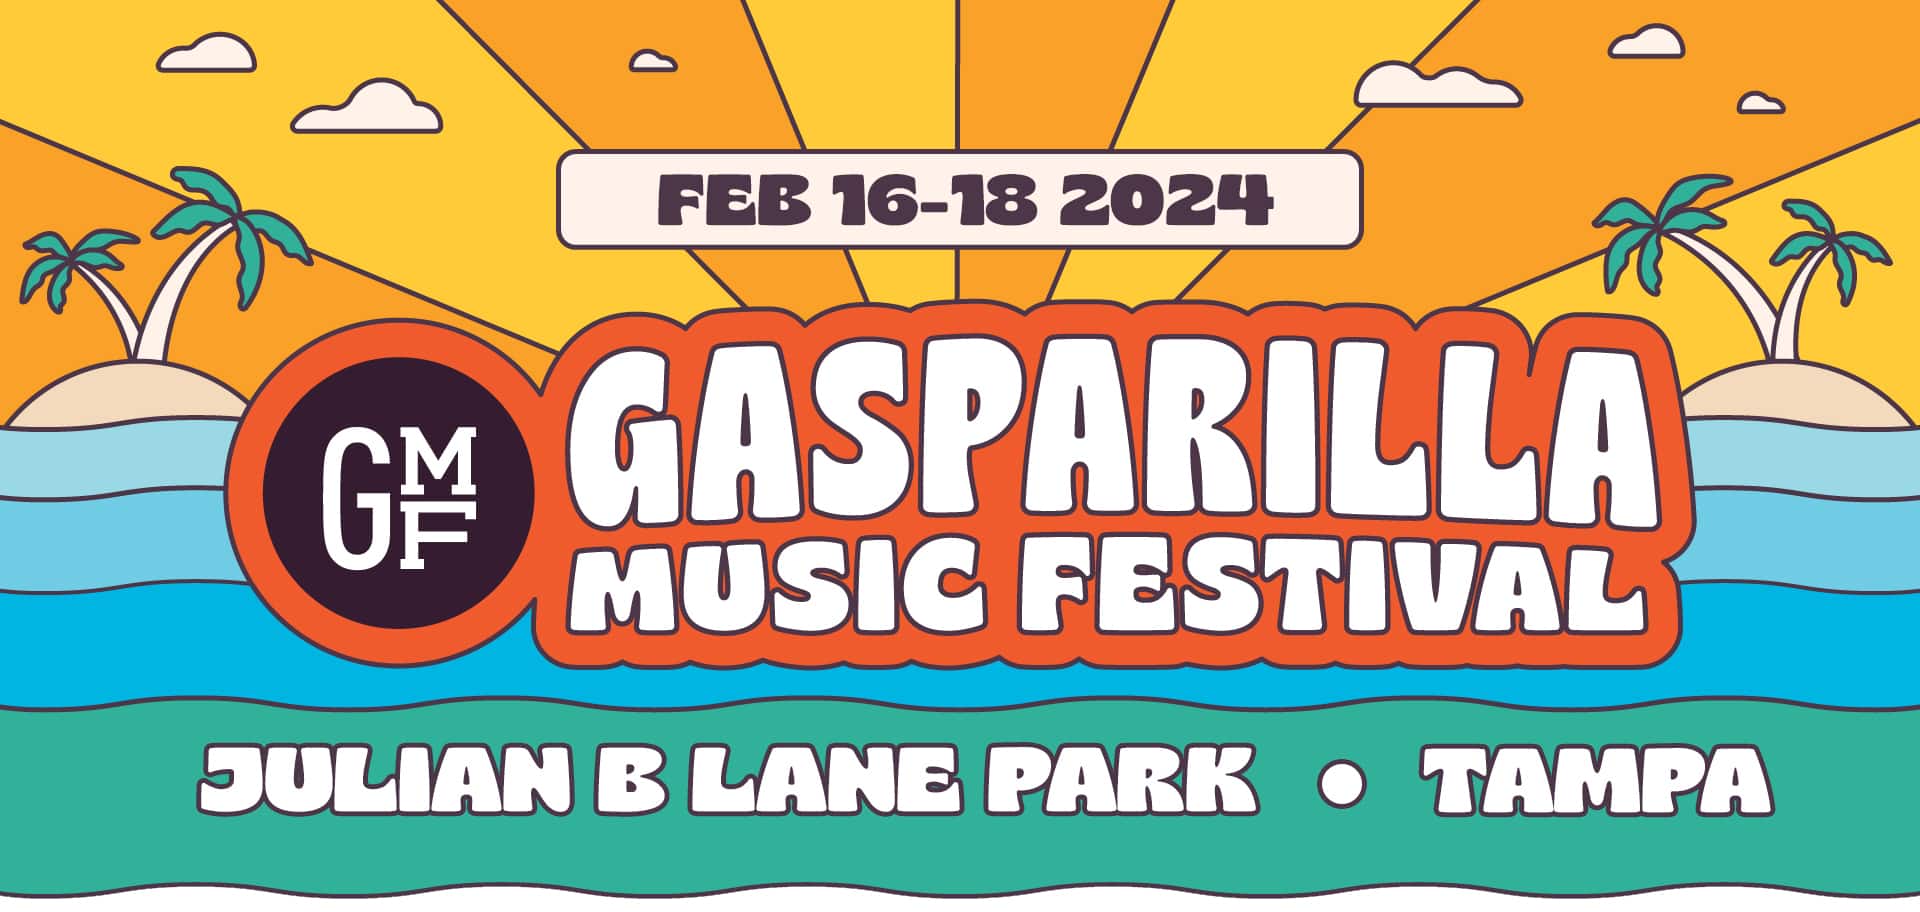 Tickets Gasparilla Music Festival Feb 1618, 2024 Tampa, Florida